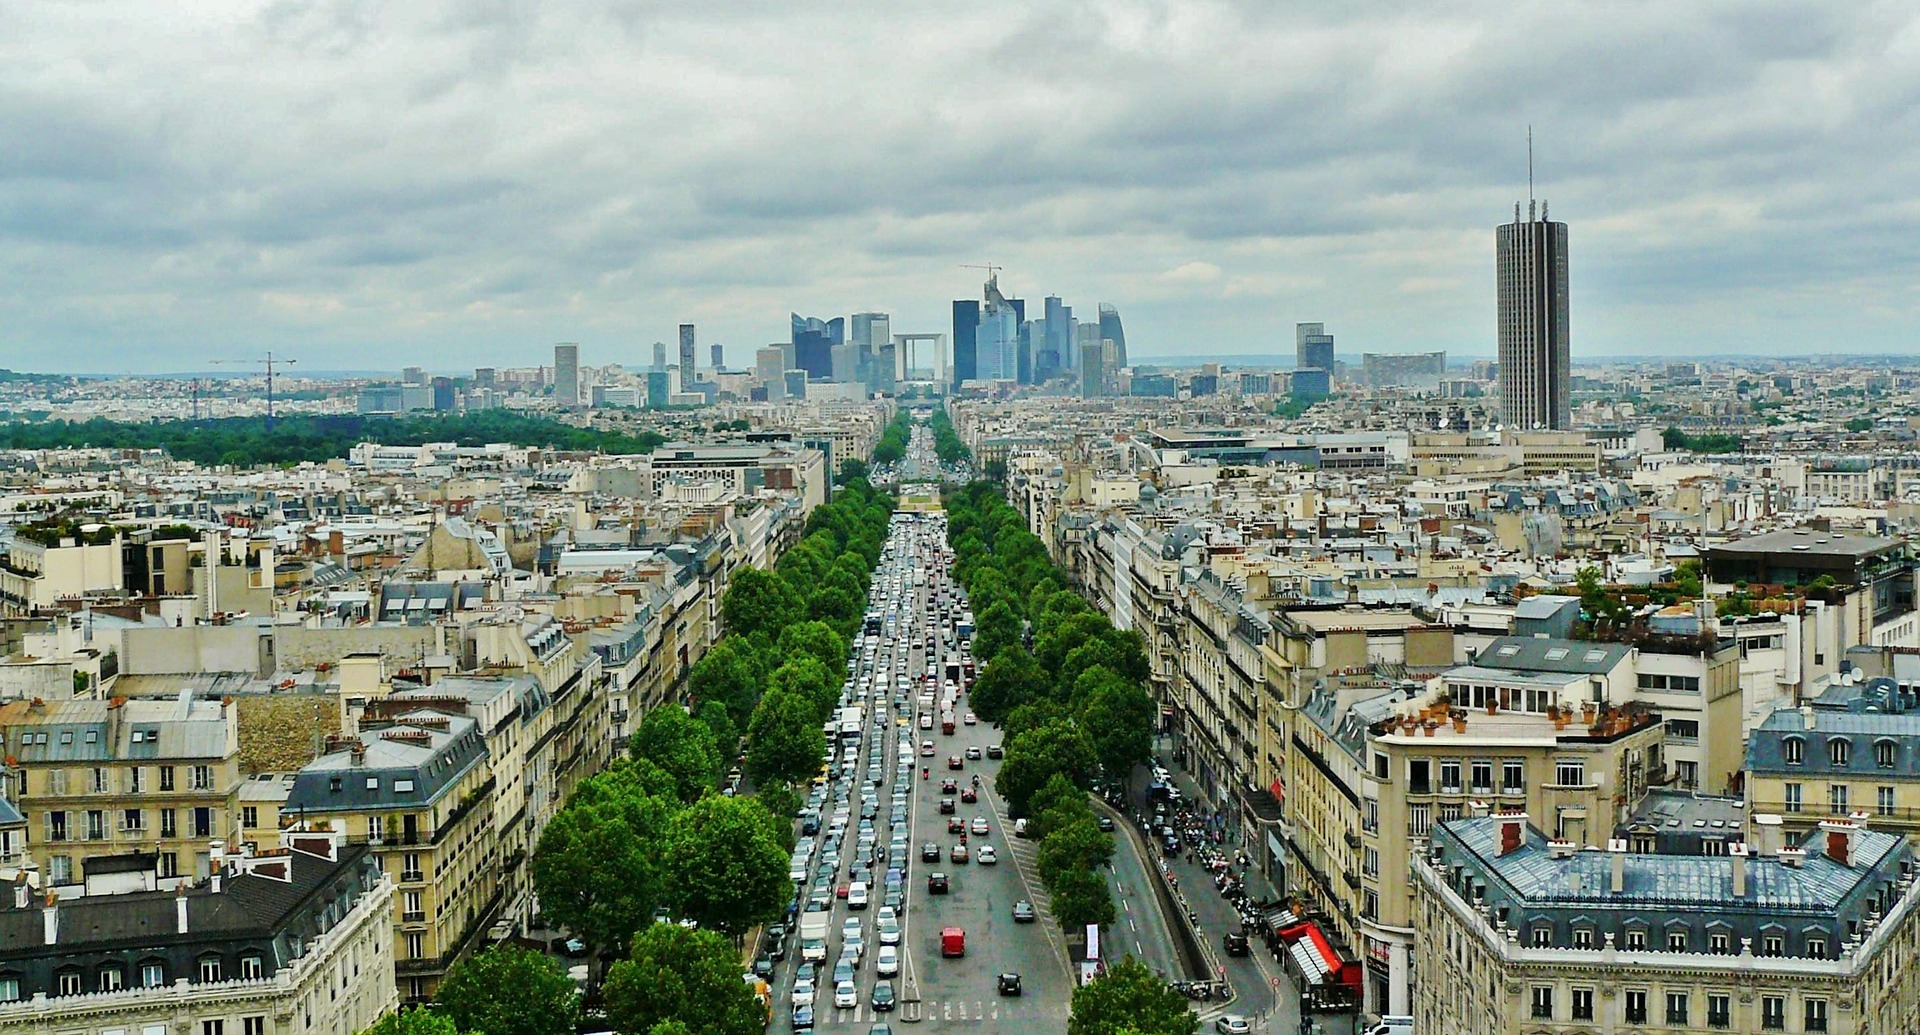 اهم الاماكن السياحية في باريس و طريقة الوصول لها بالمترو و الاحداثيات